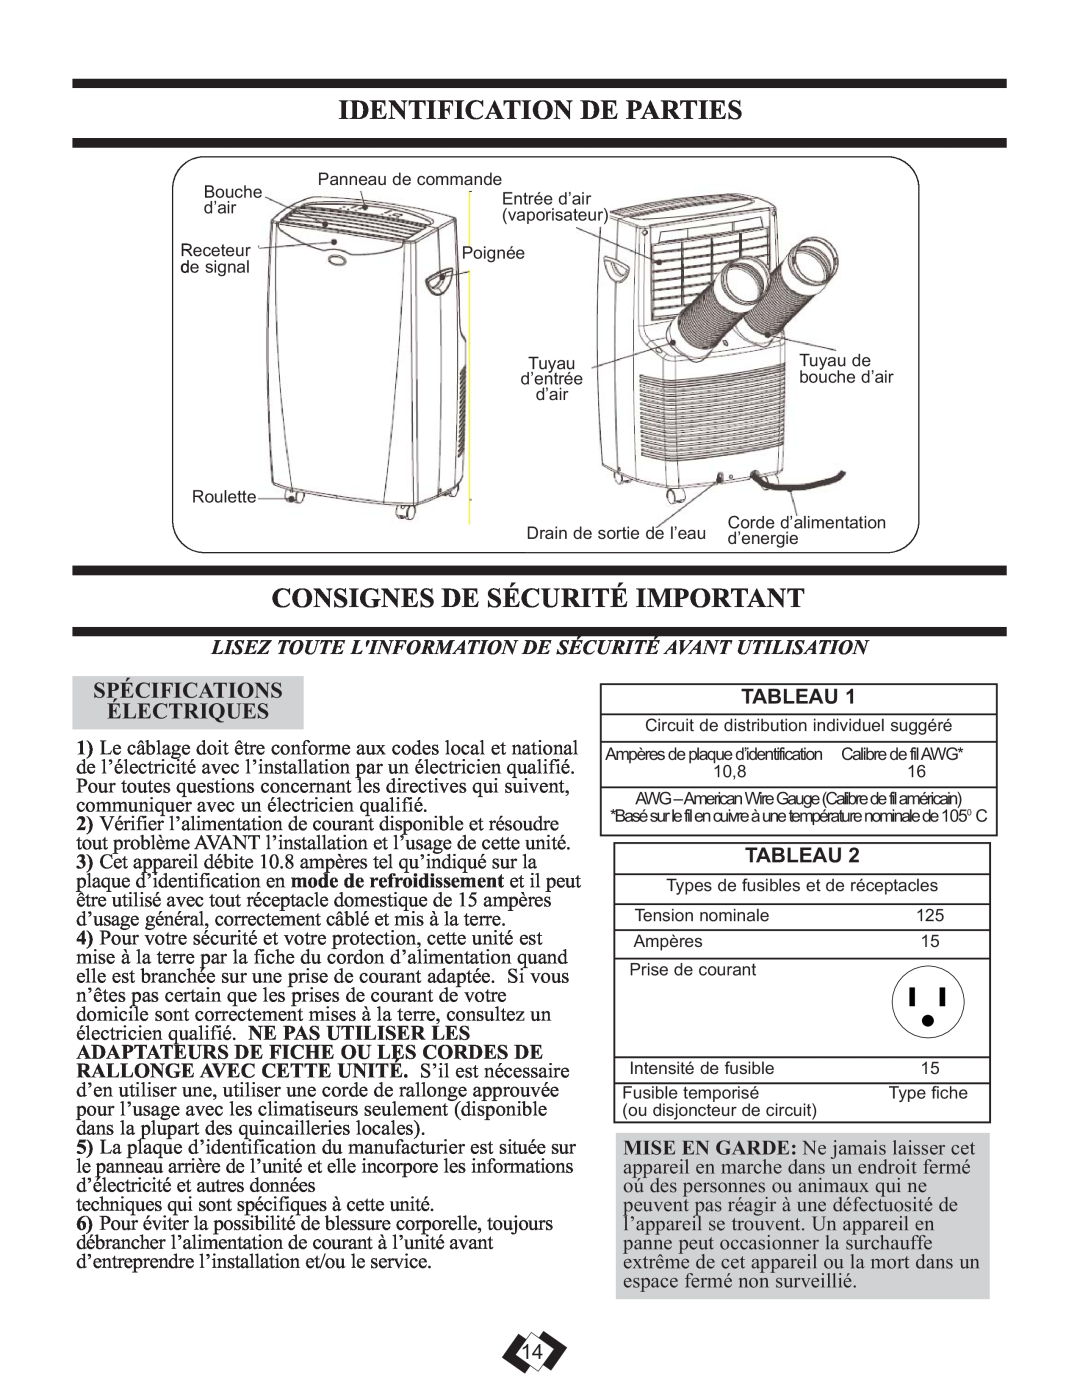 Danby DPAC 12099 manual Identification De Parties, Consignes De Sécurité Important, Spécifications Électriques, Tableau 